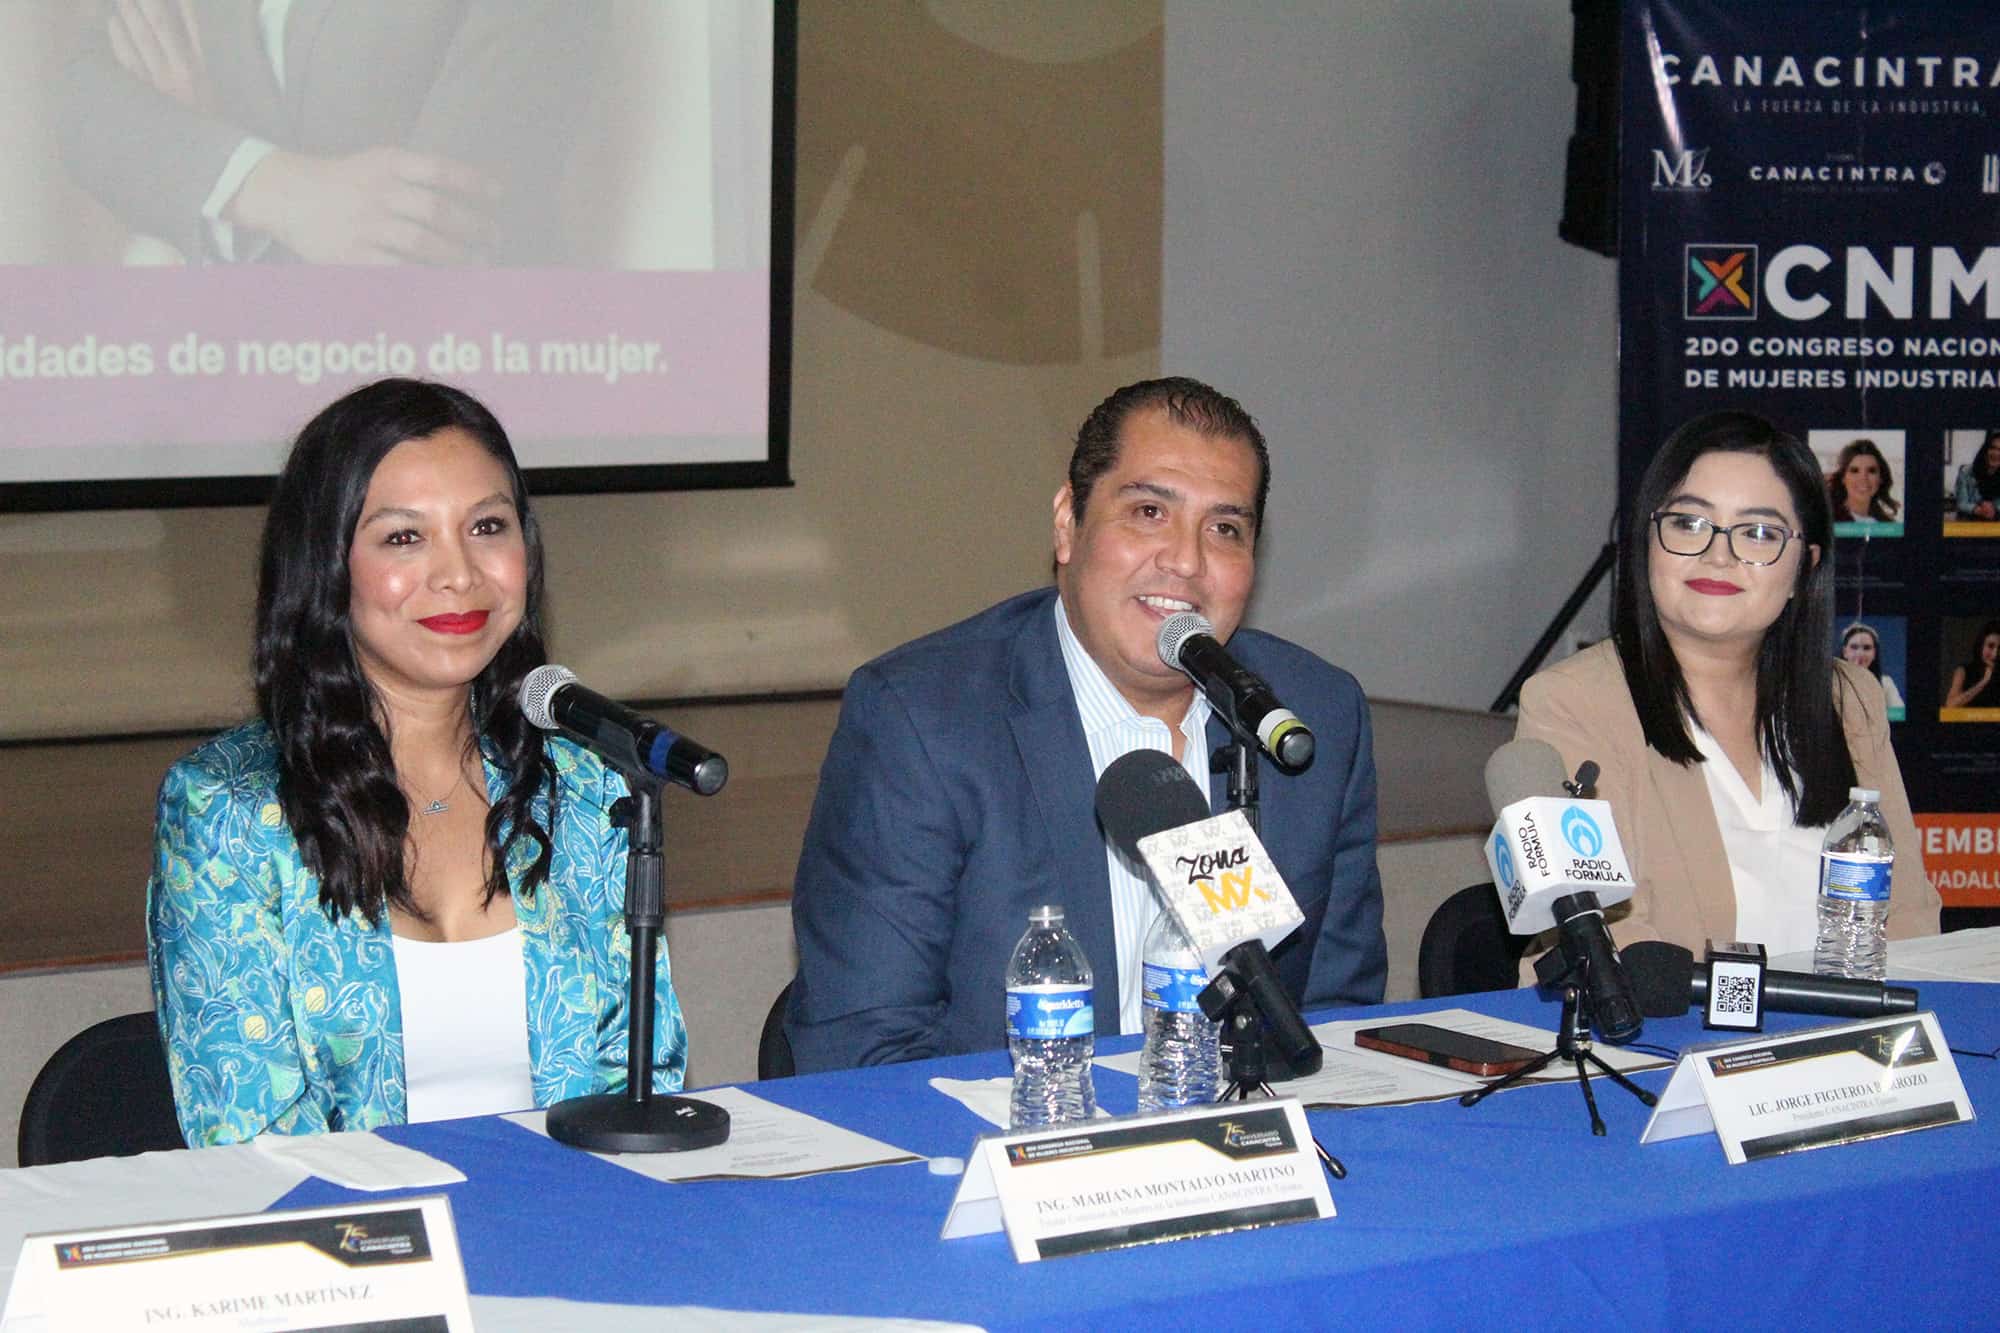 Alista Canacintra el "Segundo Congreso de Mujeres Industriales"